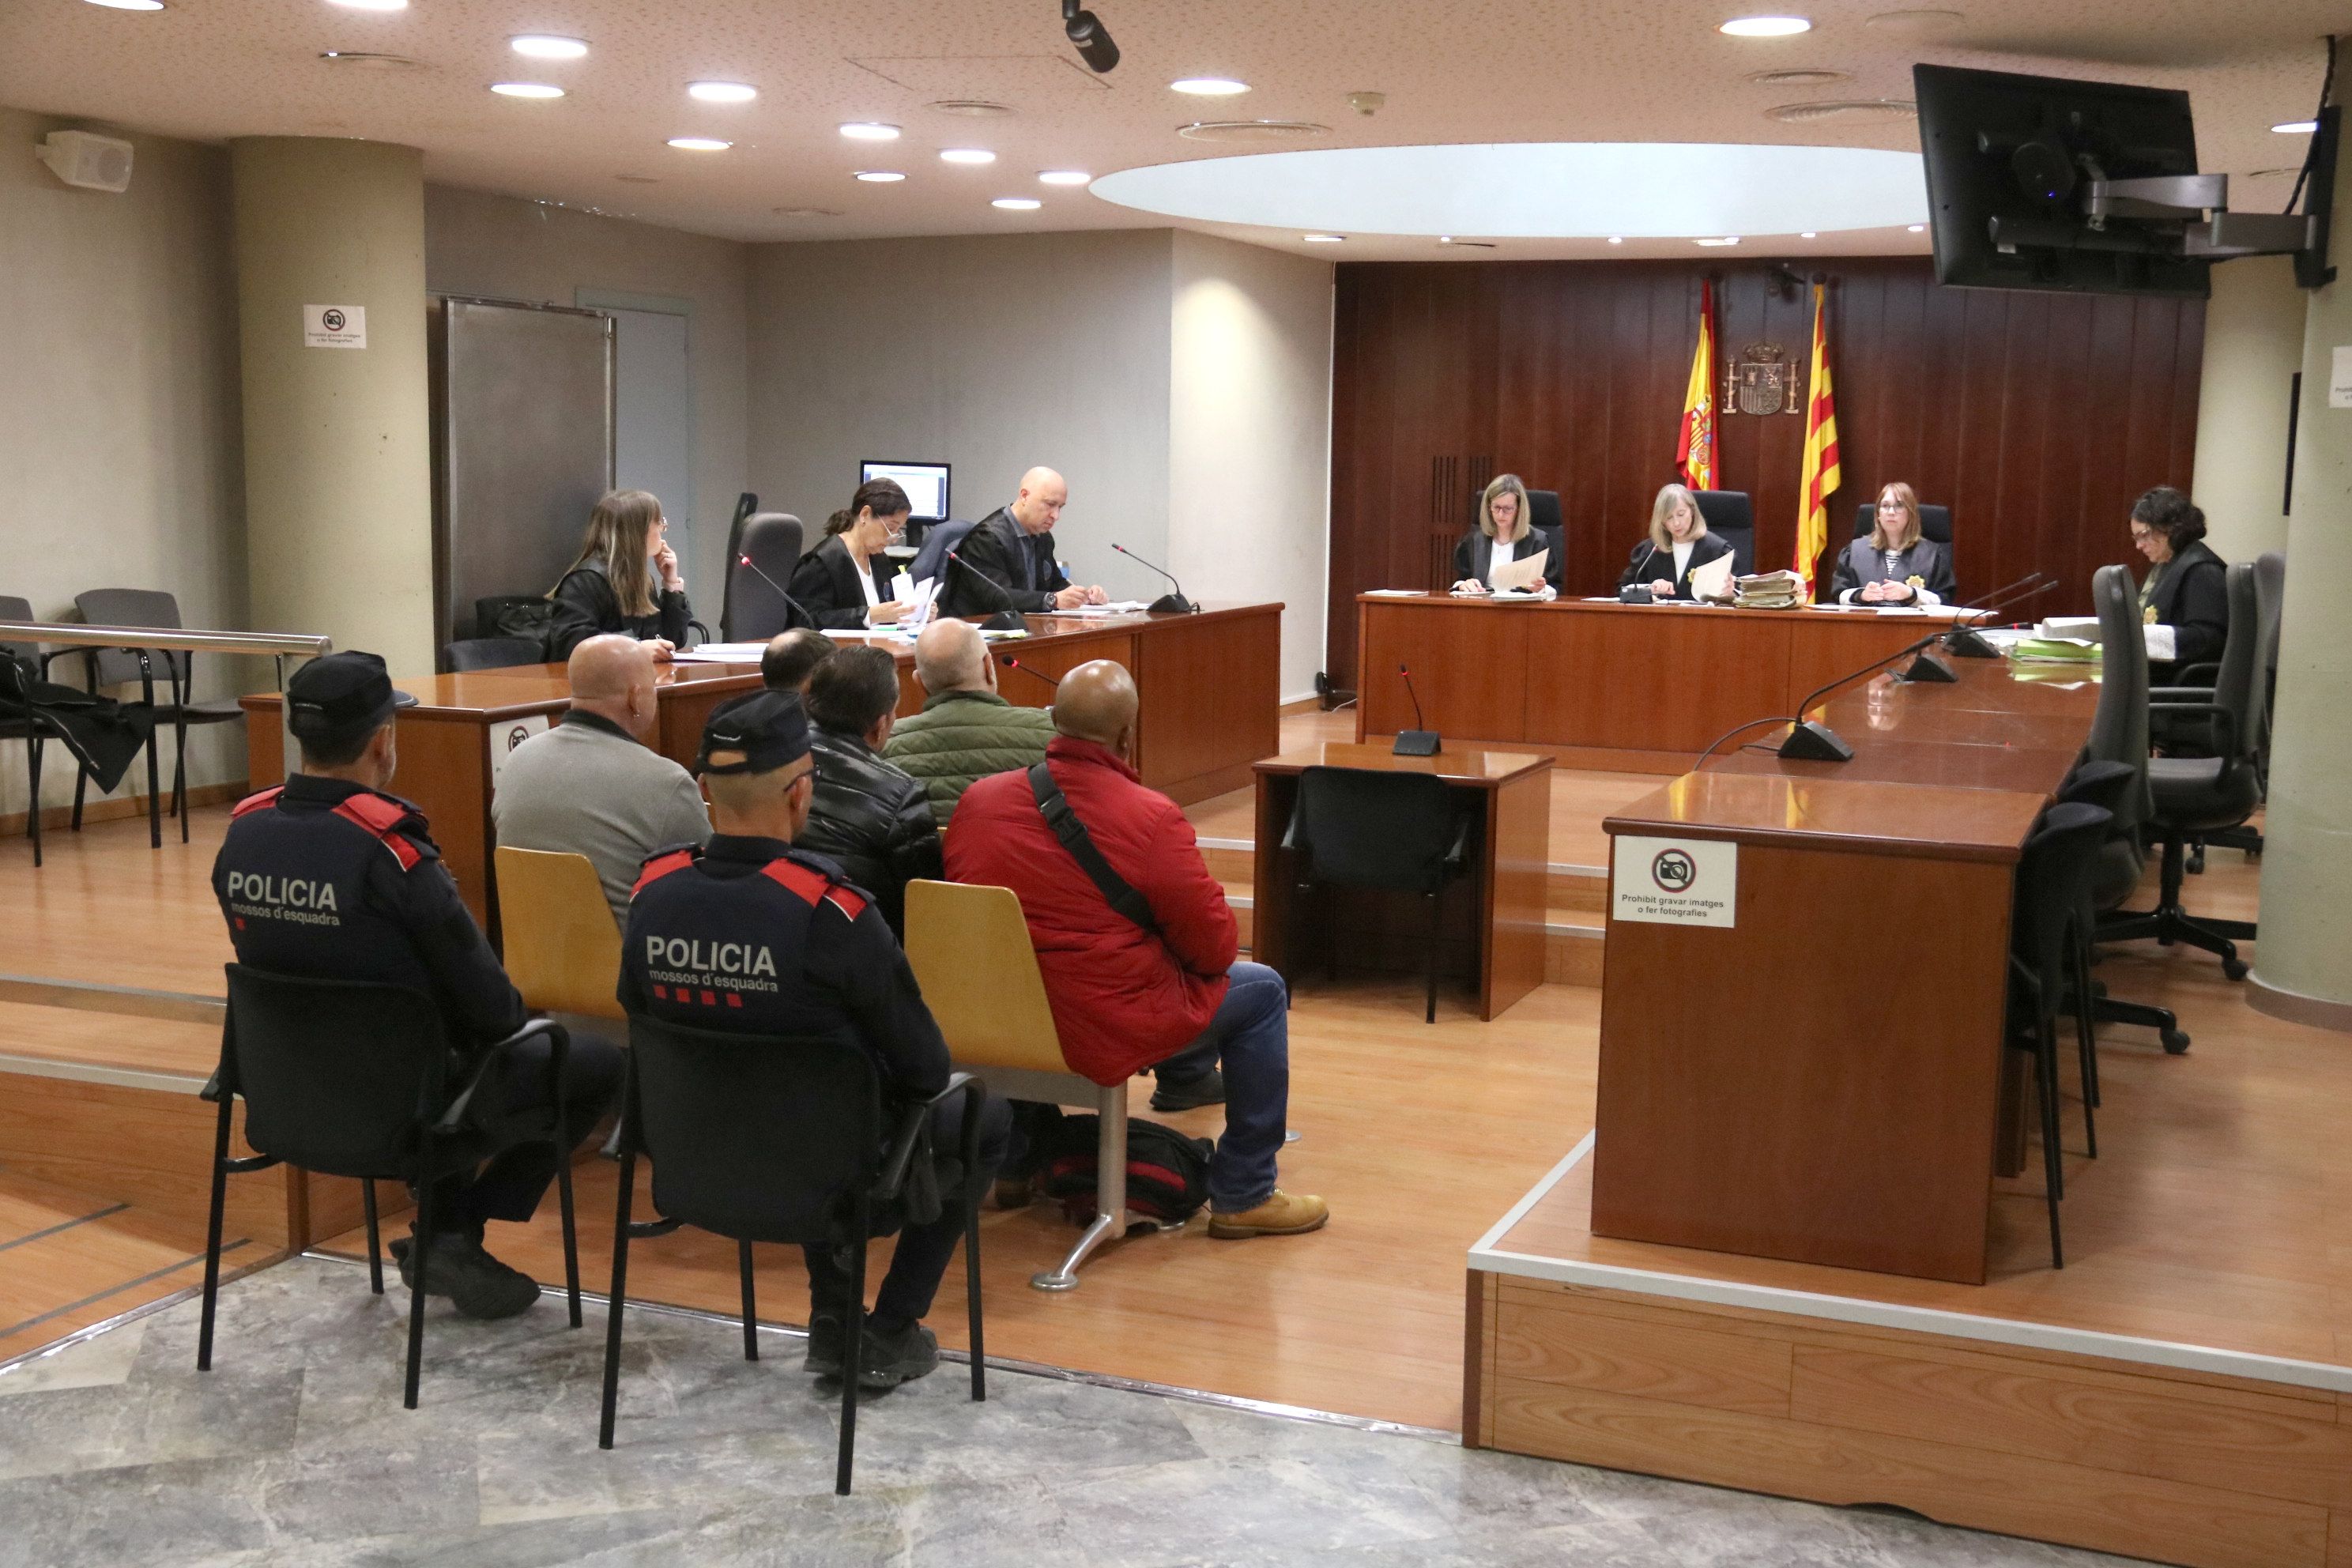 Imatge del judici a Lleida